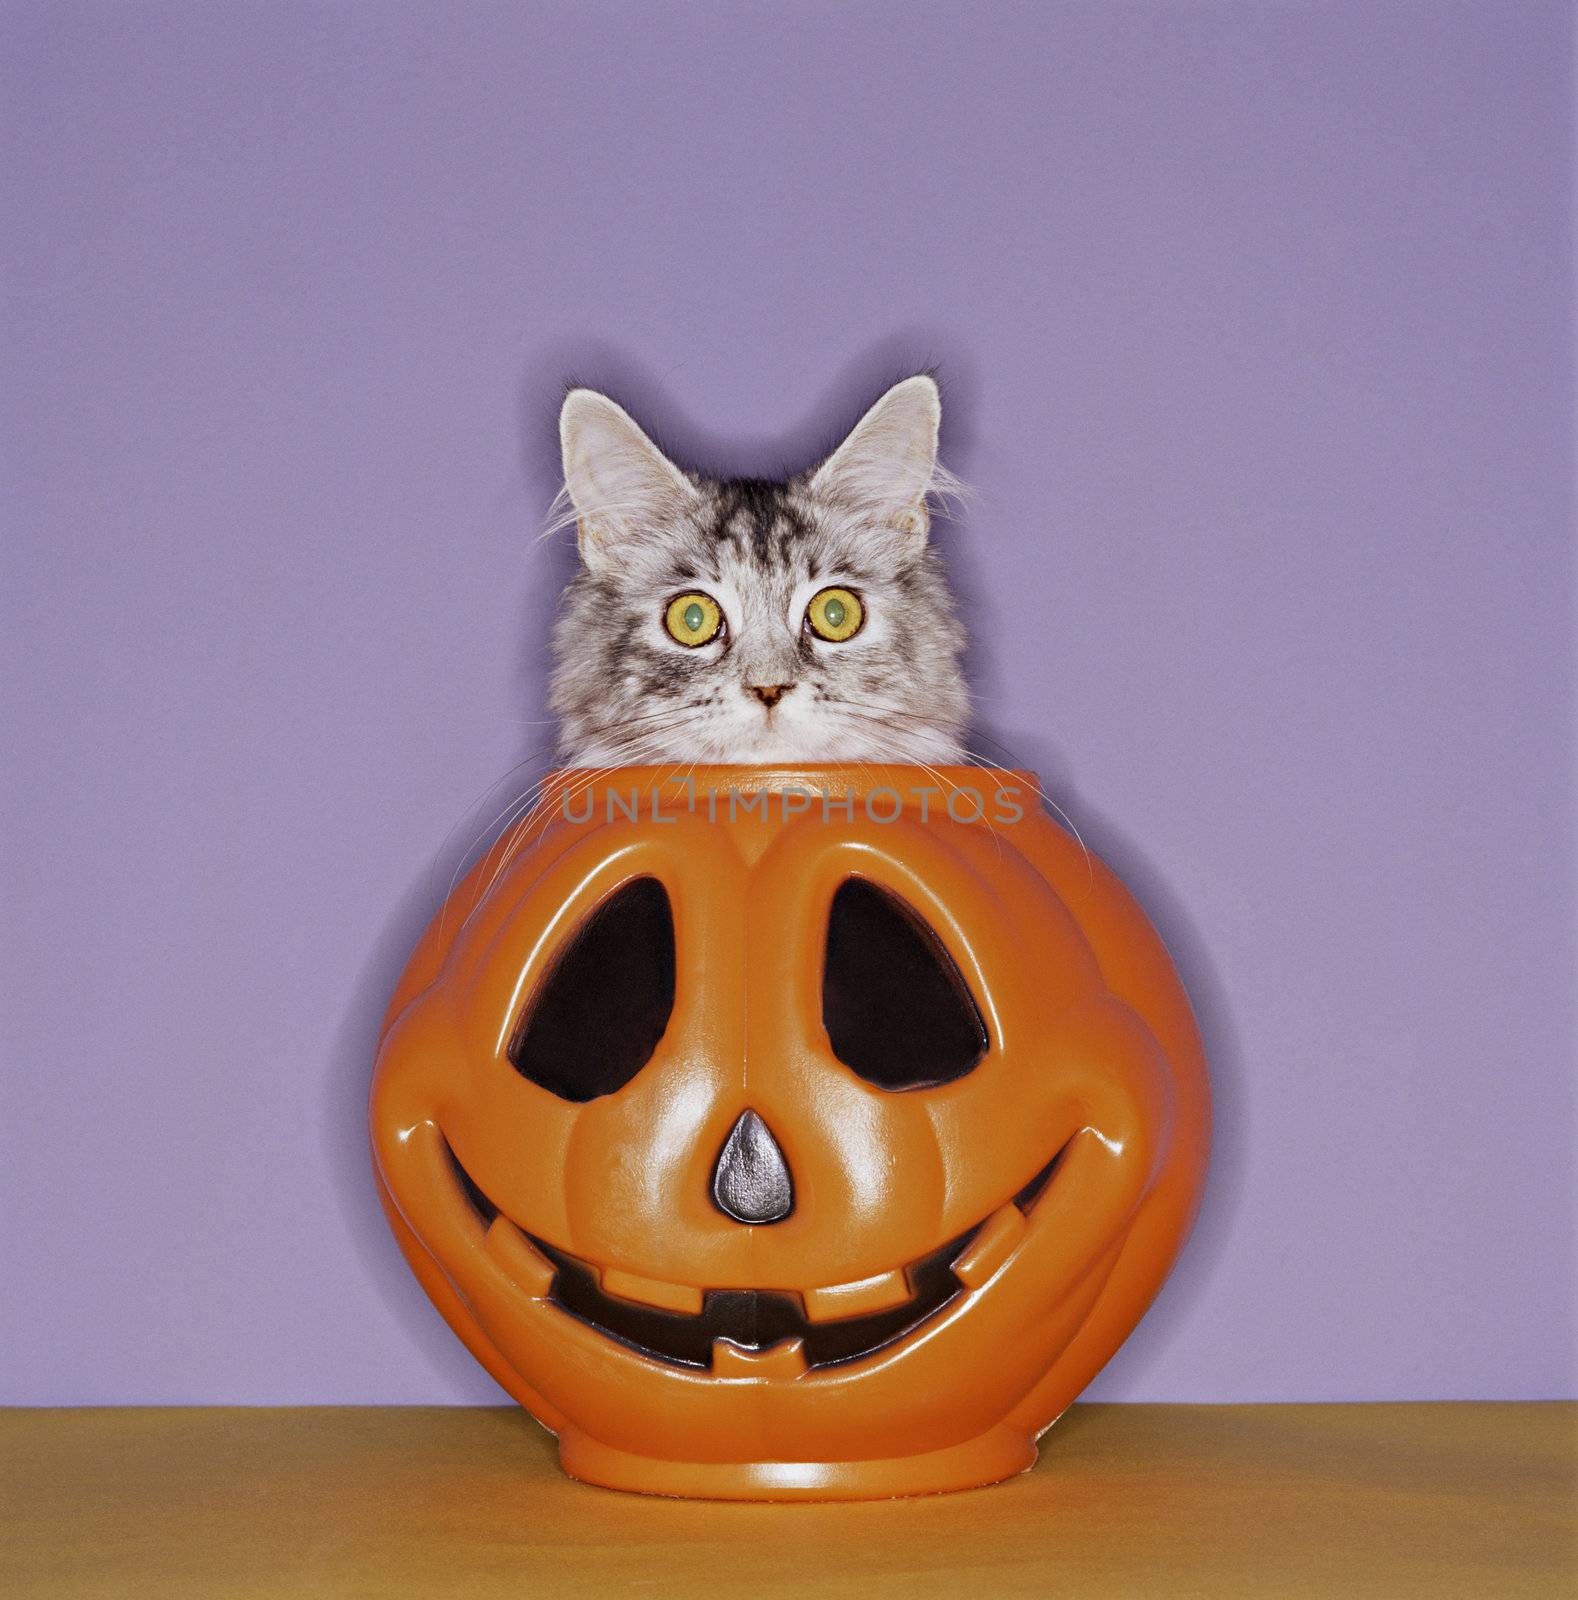 Startled Cat Peeping Out of Halloween Pumpkin